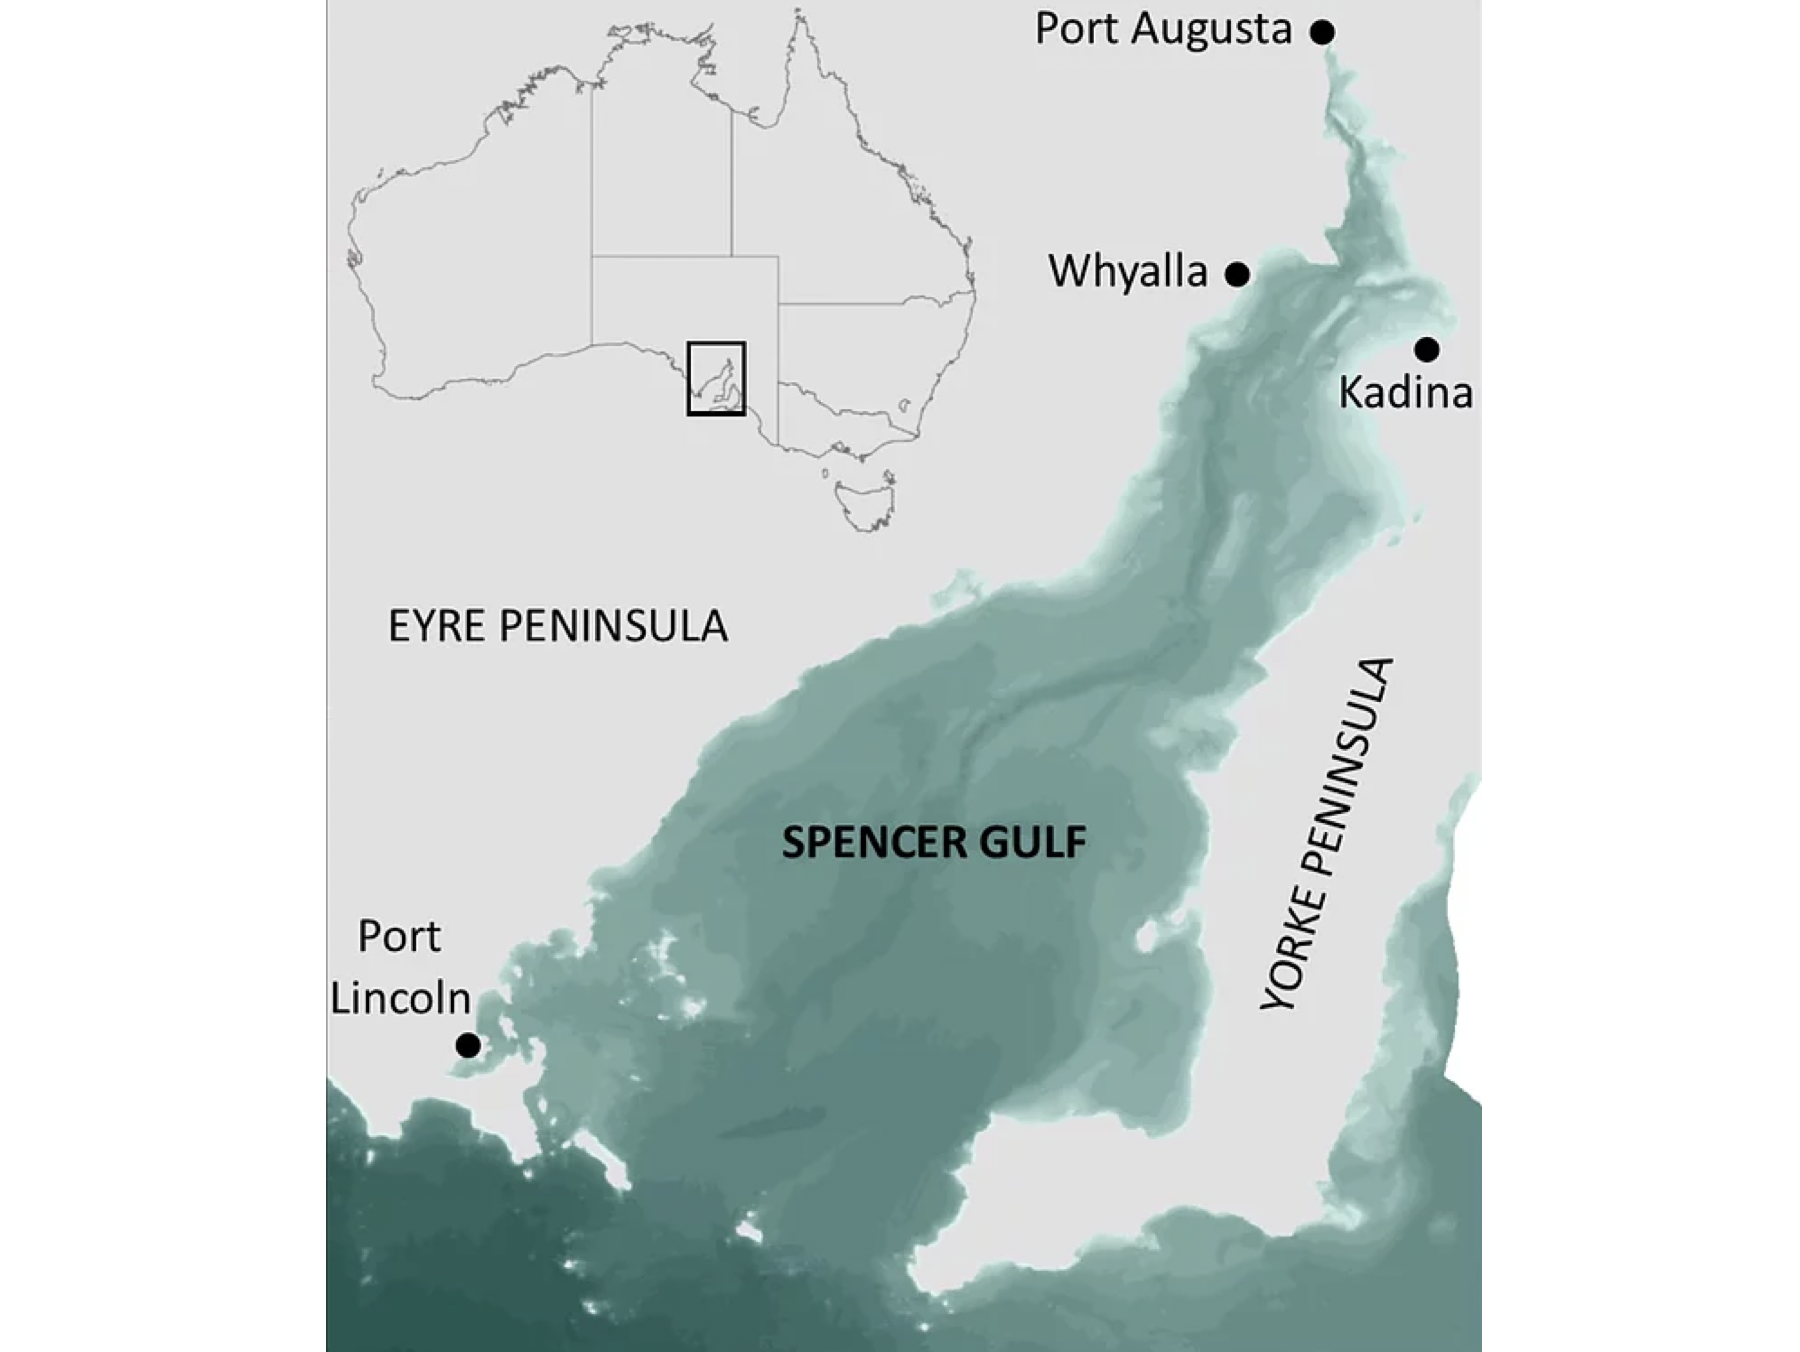 Spencer Gulf